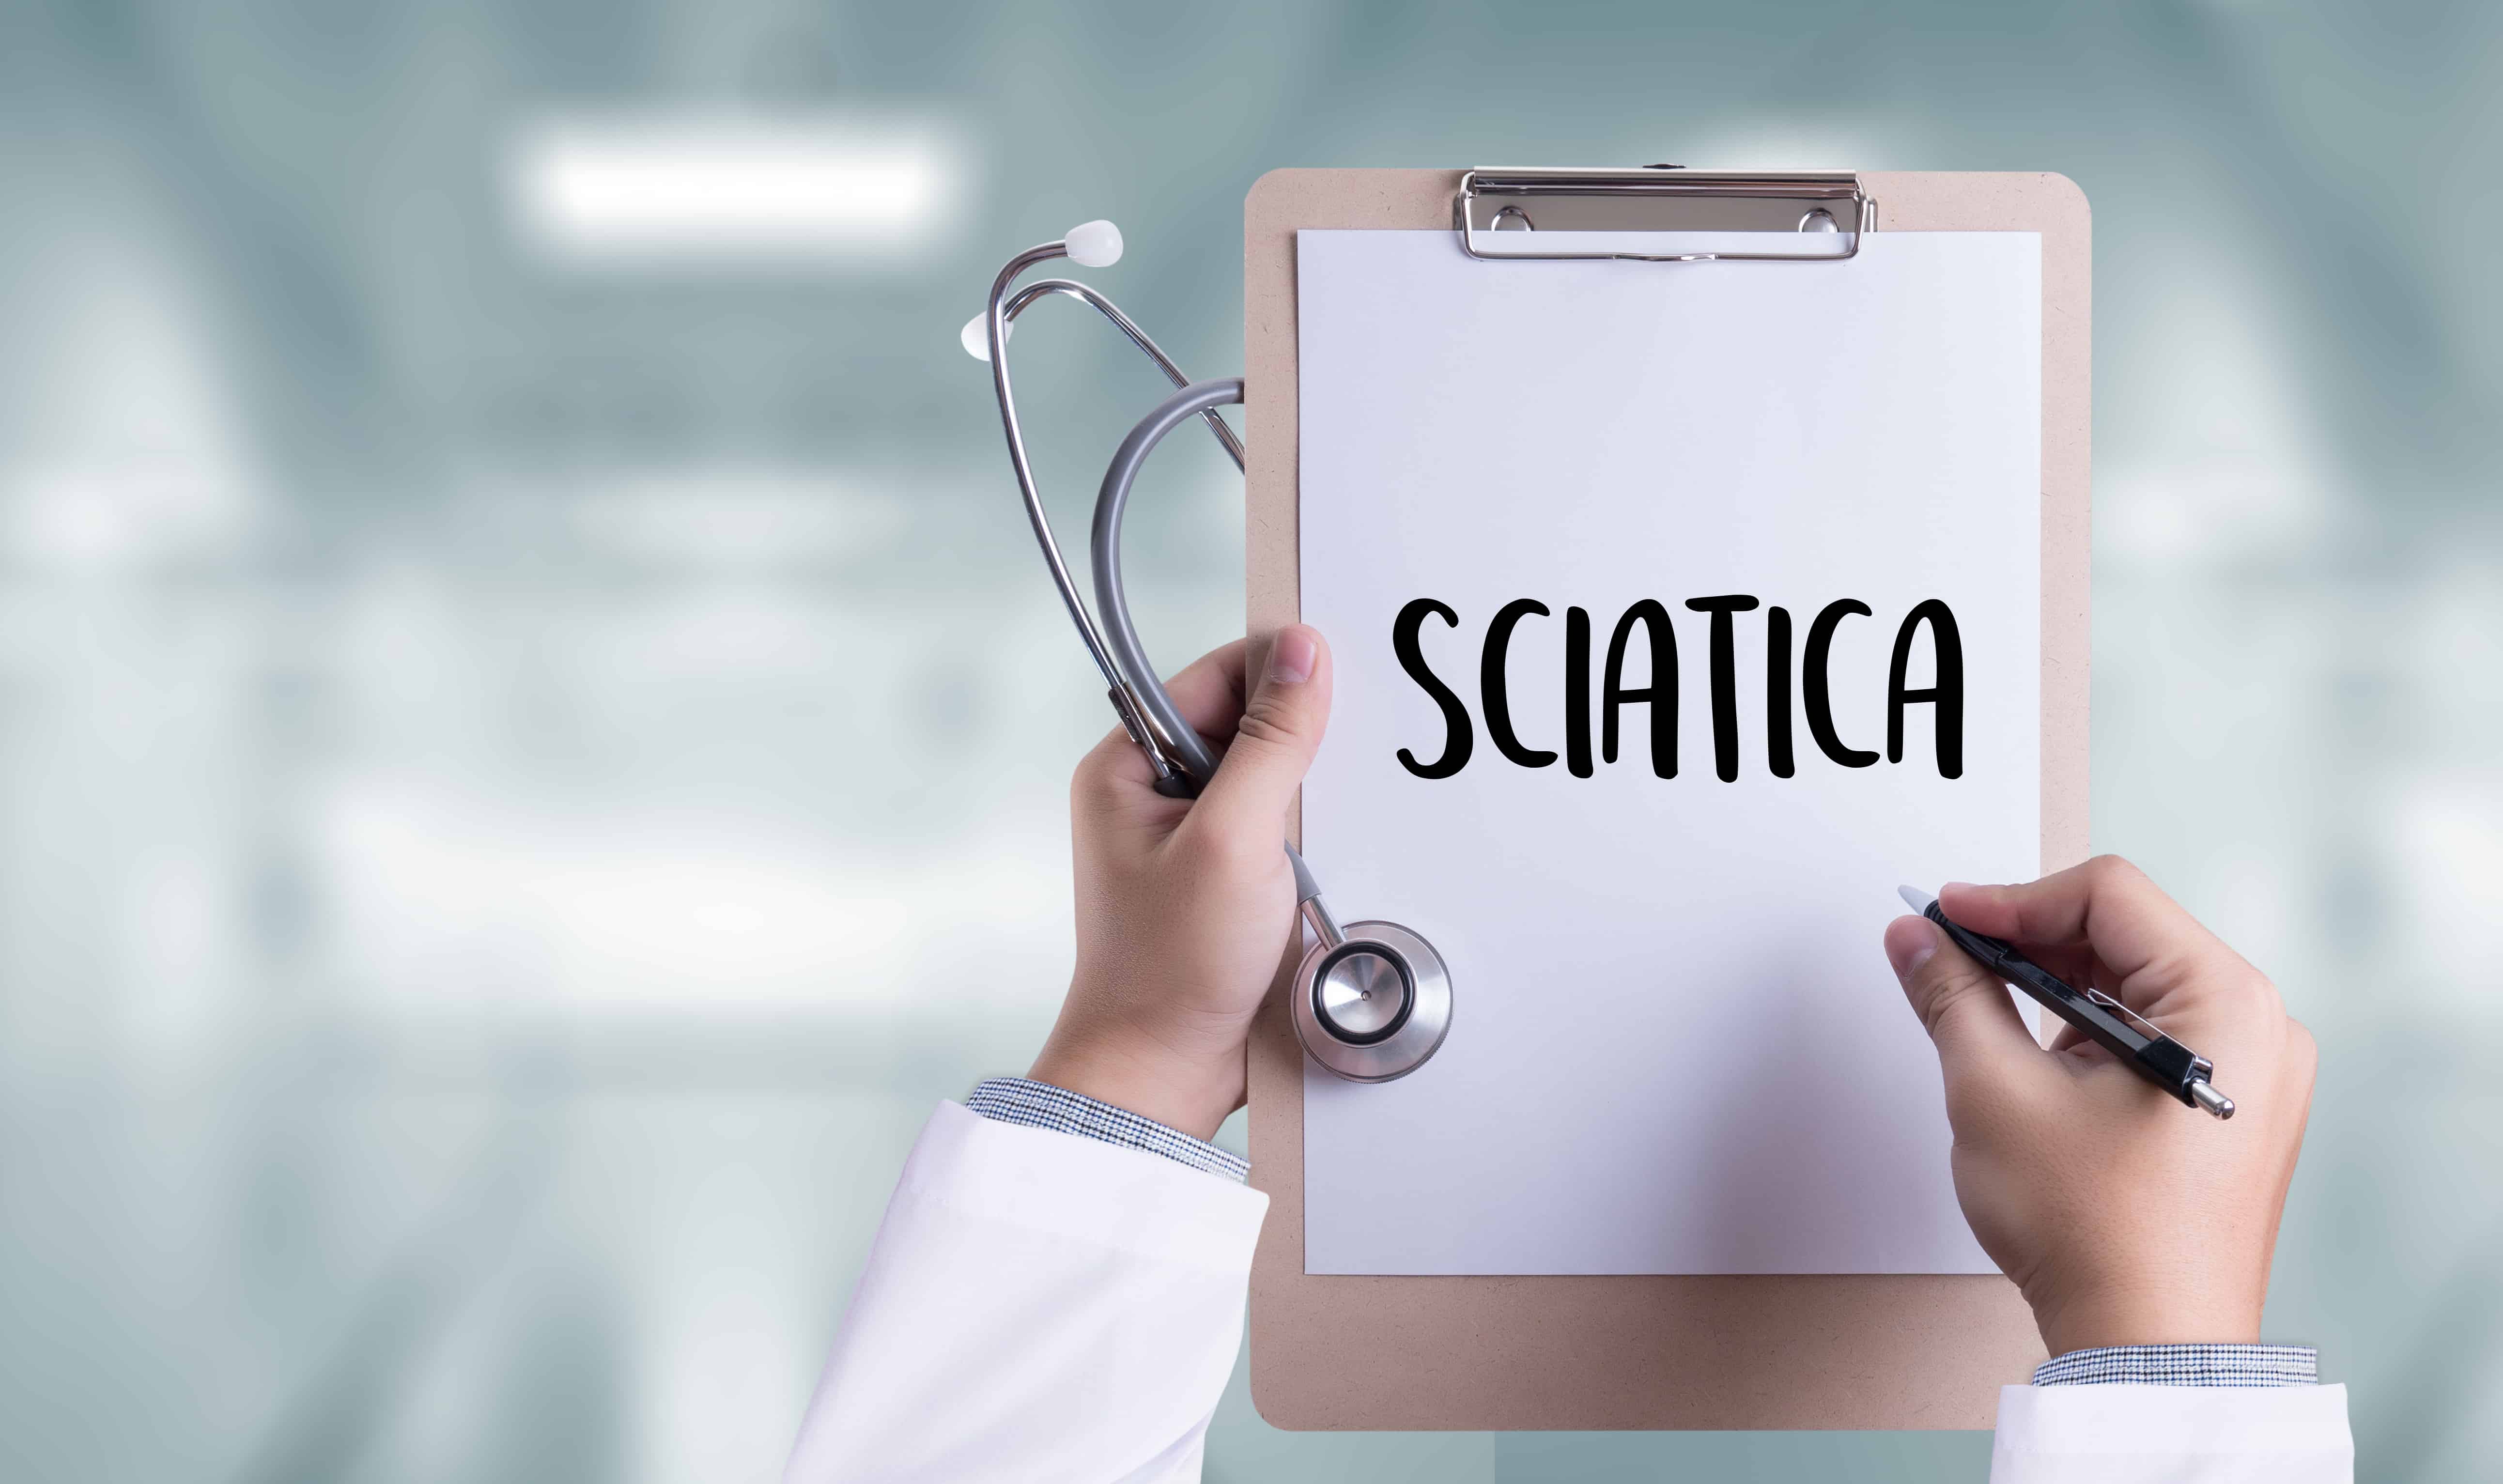 VA Rating for Sciatica: How to File a VA Claim for Sciatica Sciata VA Rating